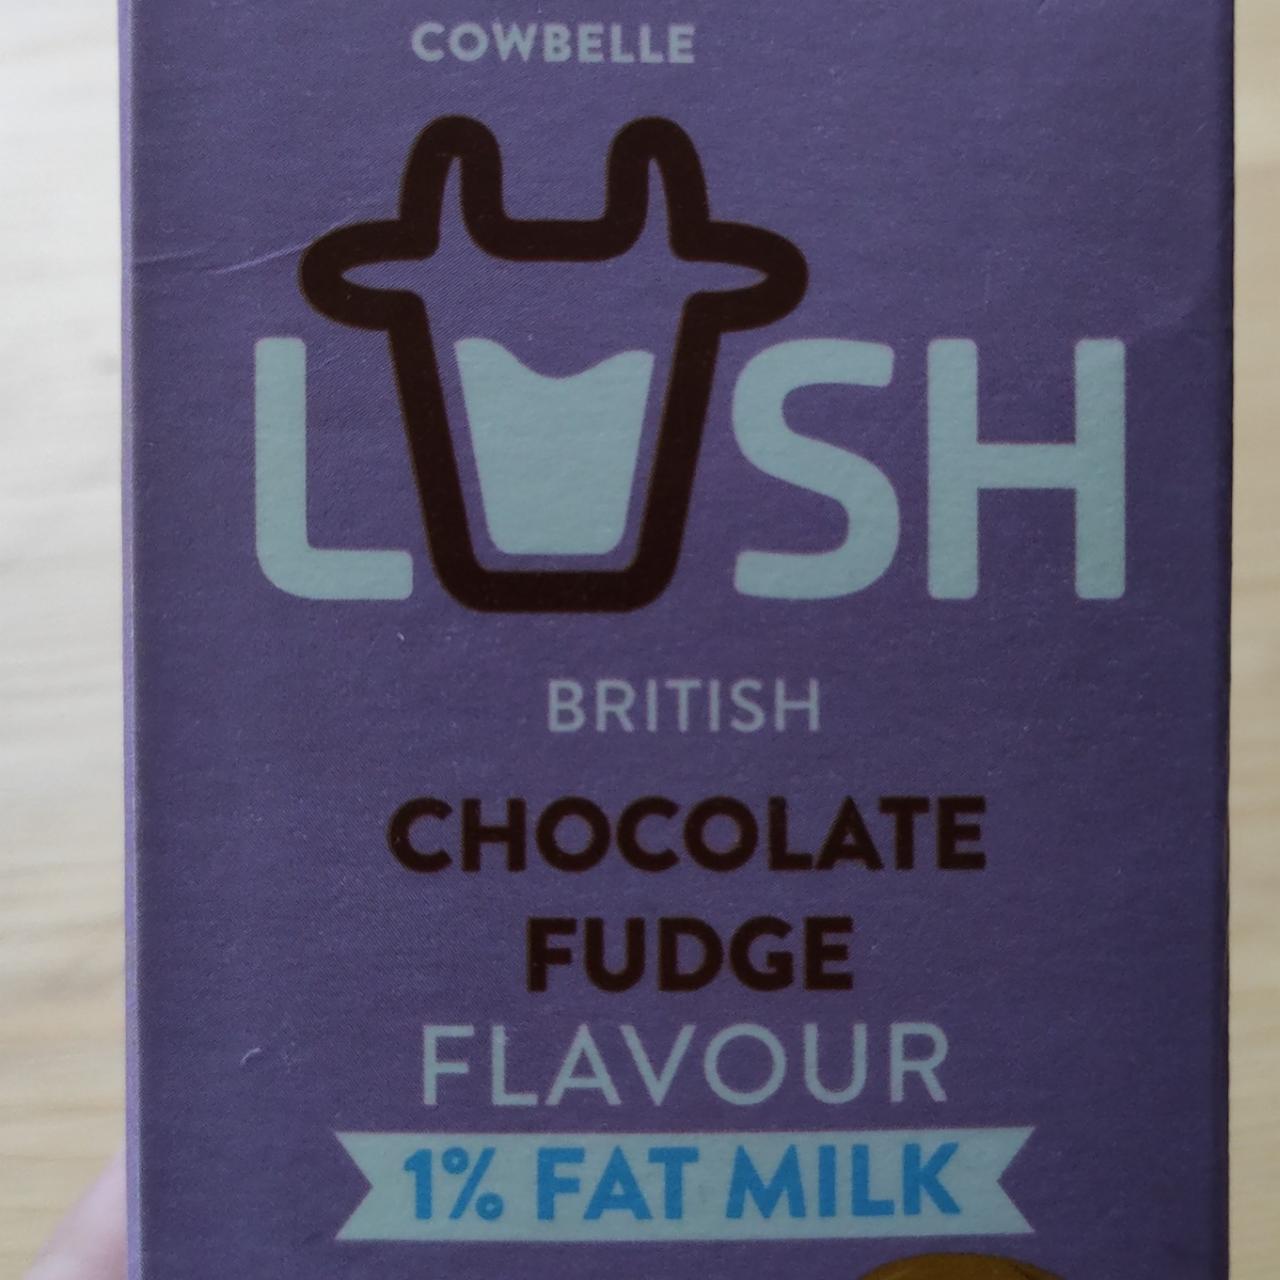 Fotografie - Lush british Chocolate fudge flavour Cowbelle